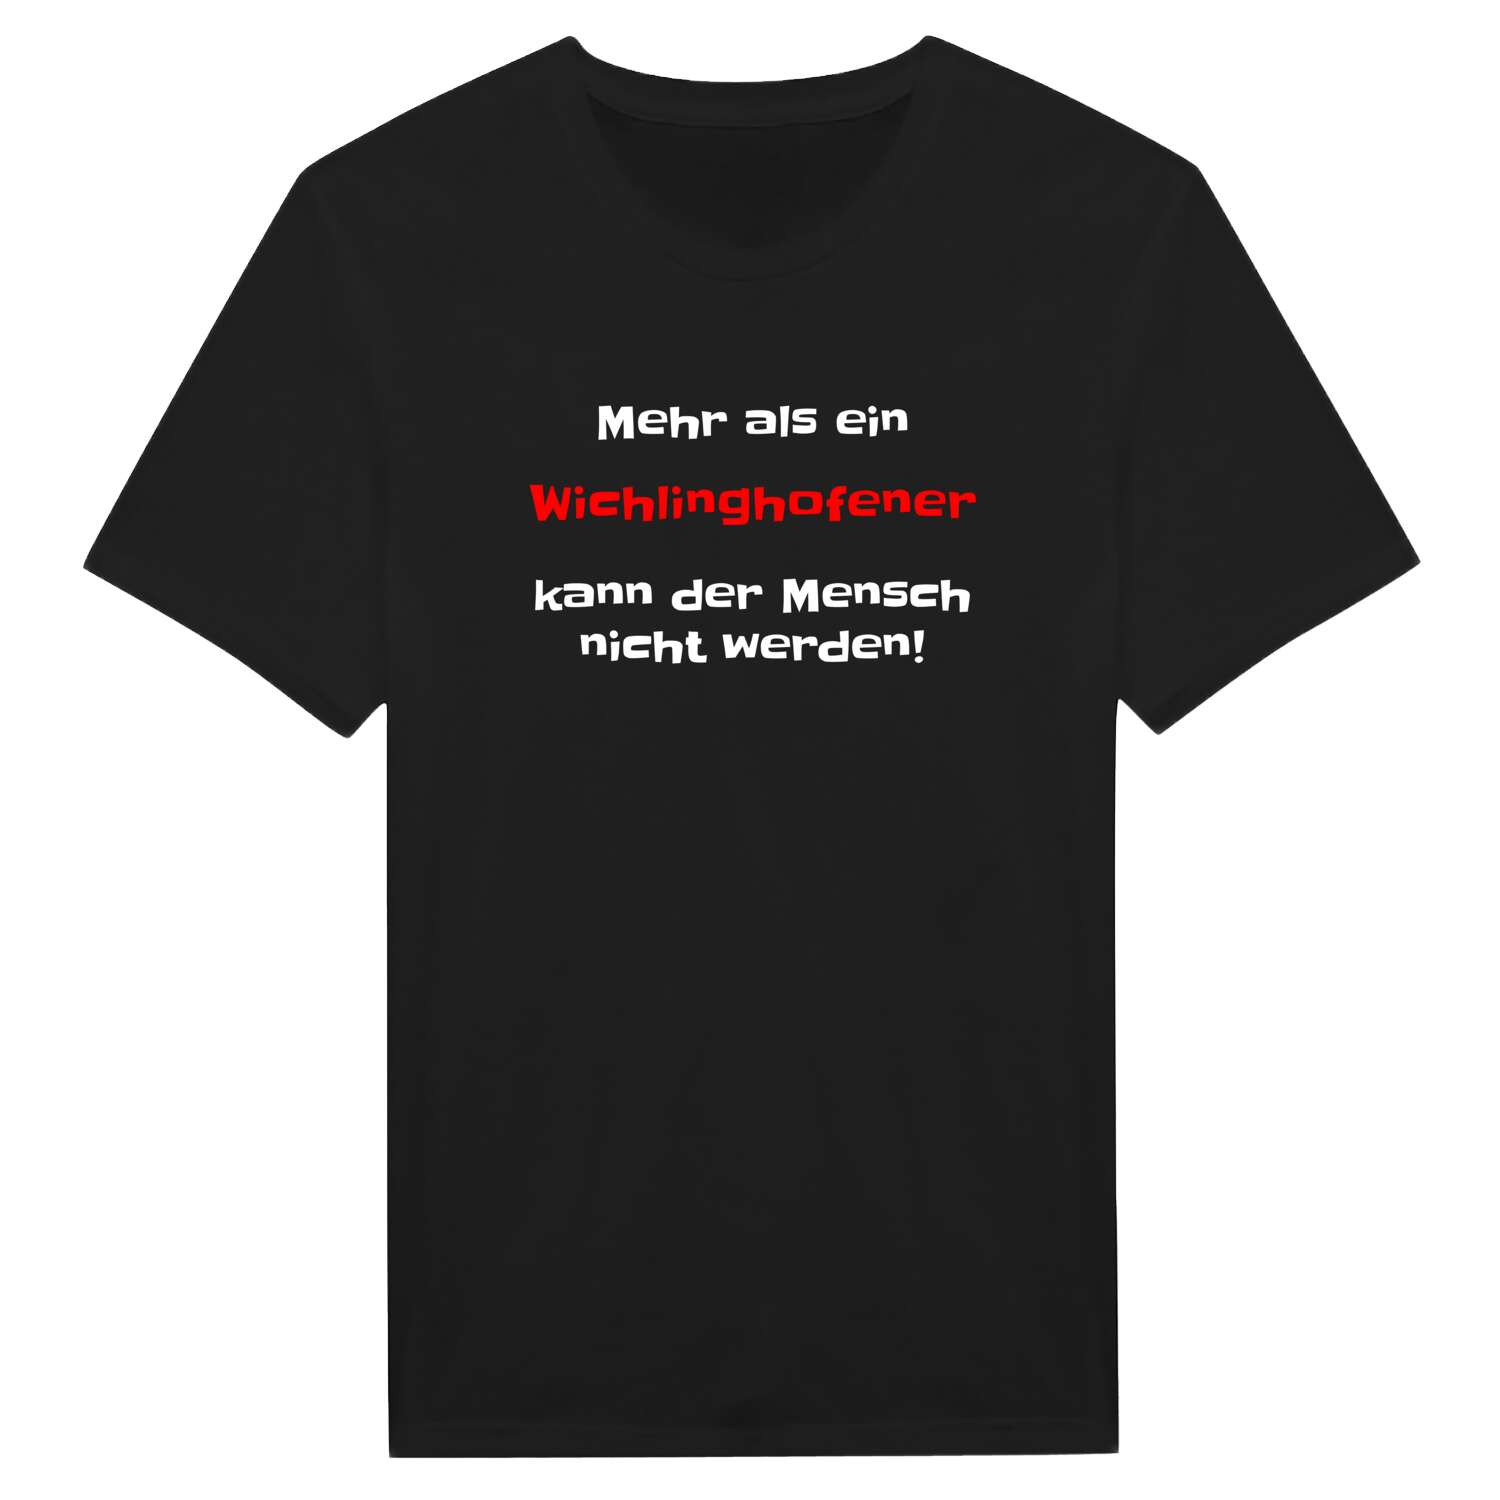 Wichlinghofen T-Shirt »Mehr als ein«